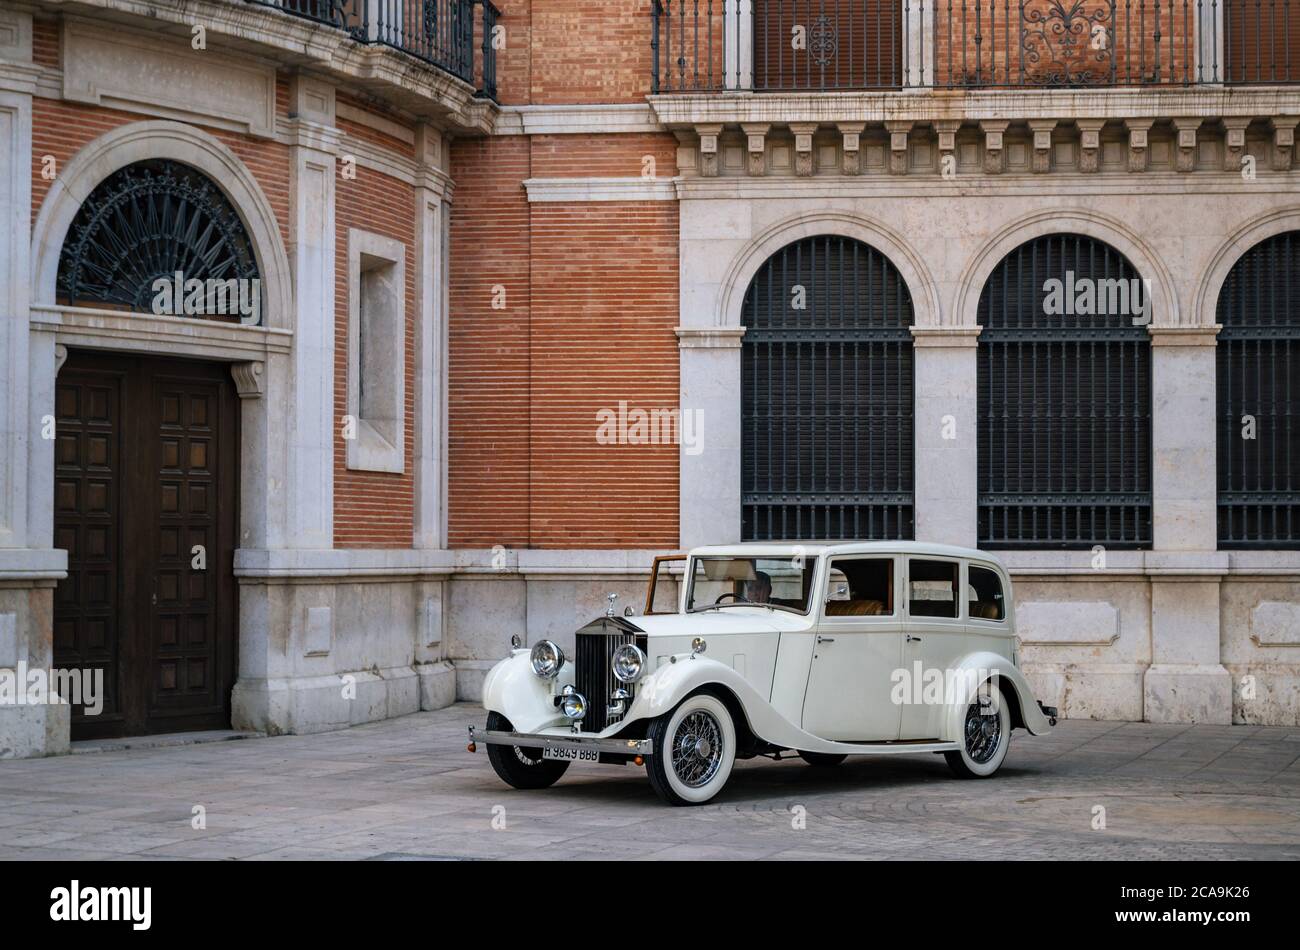 Valence, Espagne - 3 juin 2017: Rolls-Royce 25-30 à partir des années 1930 sur la rue Banque D'Images